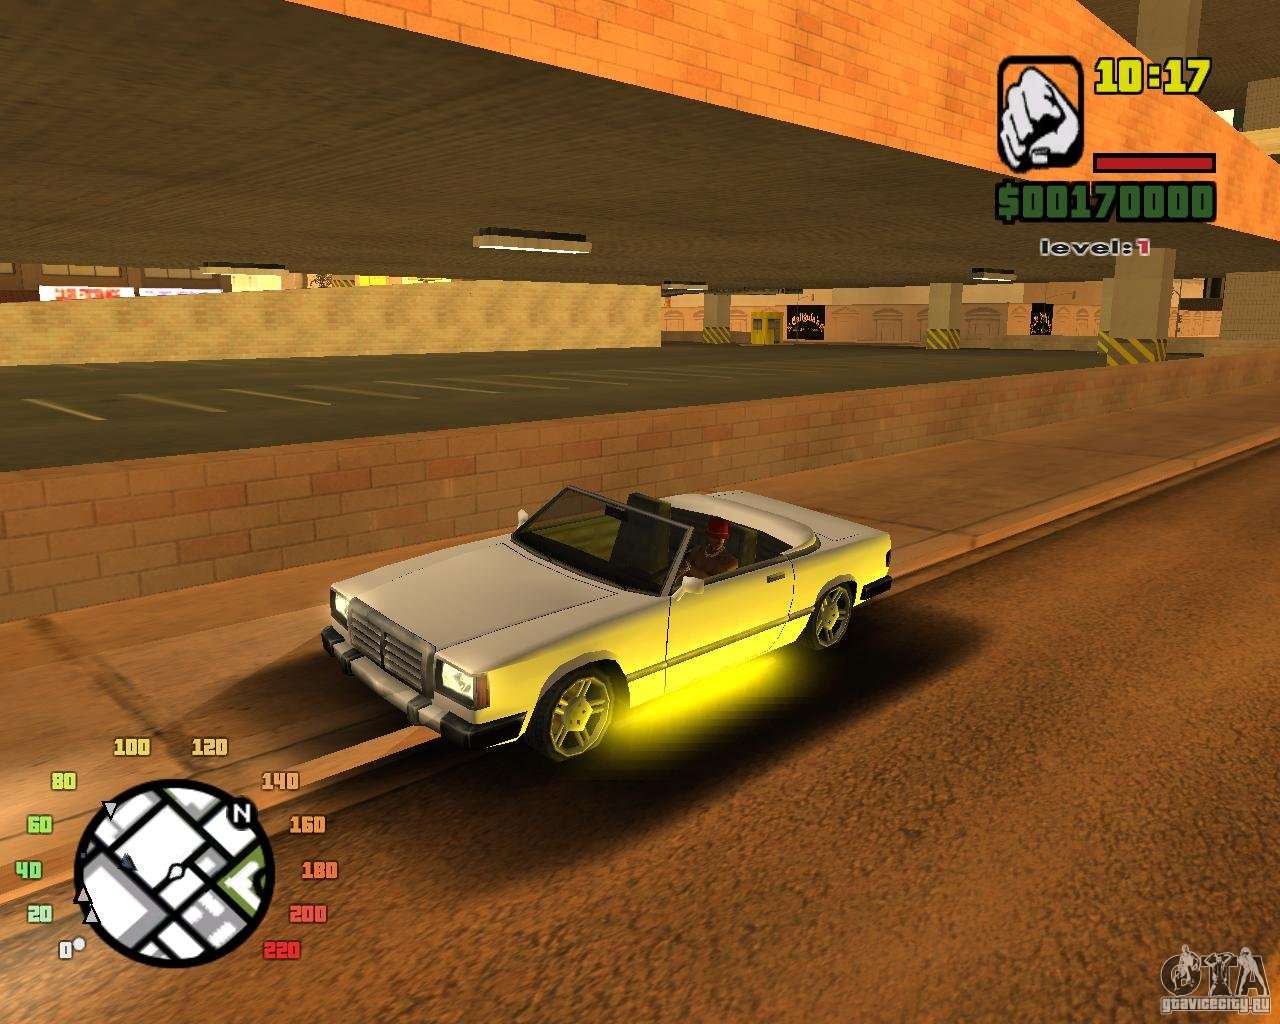 Extreme Car Mod SA:MP version para GTA San Andreas